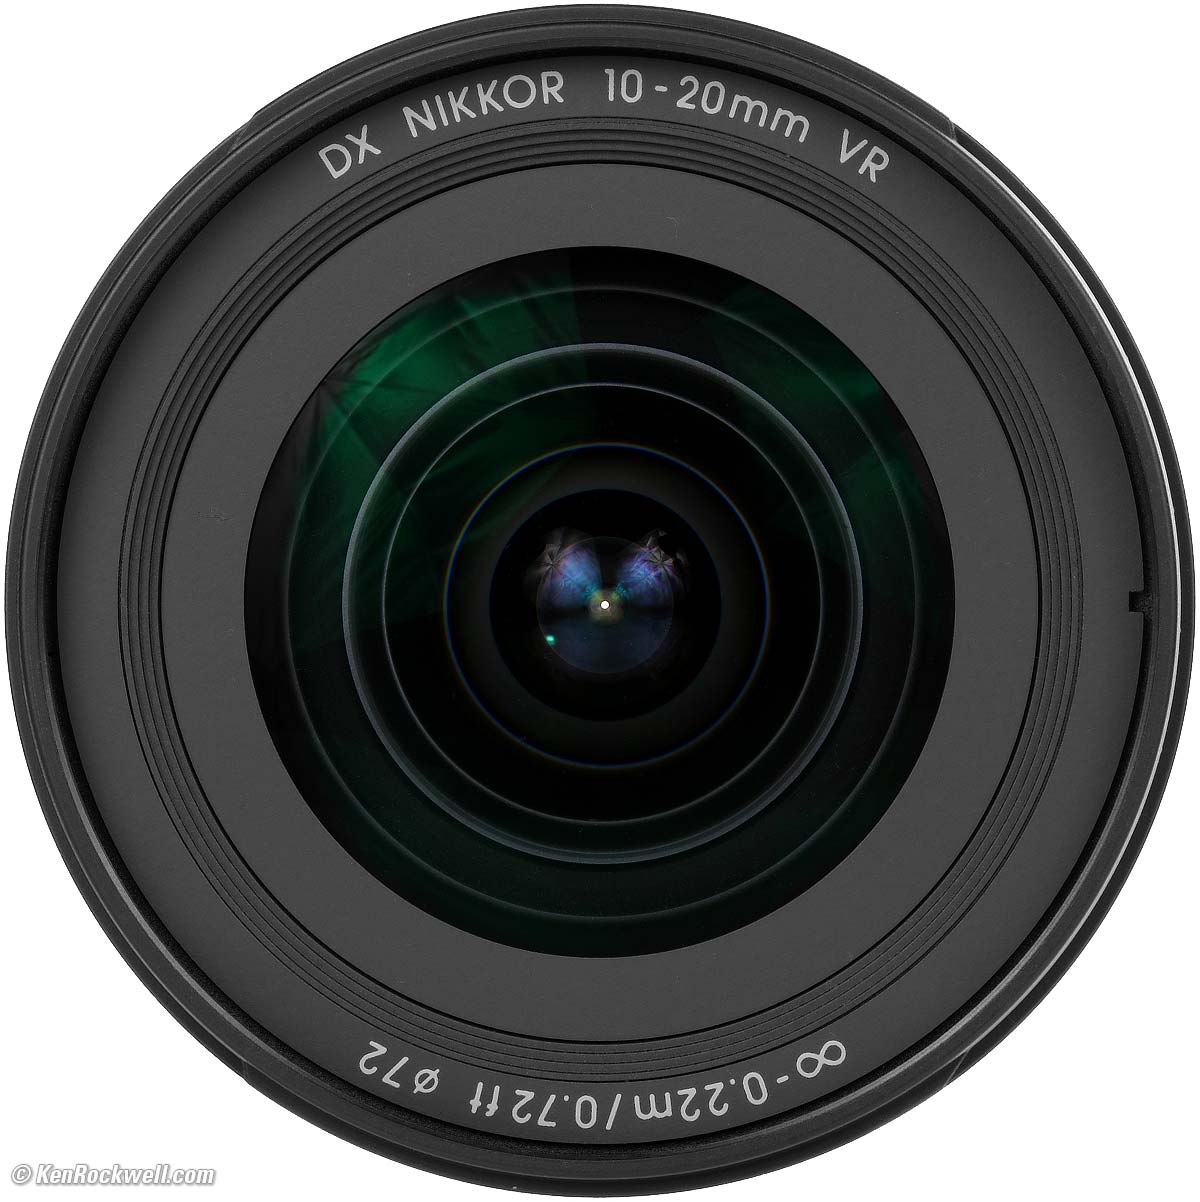 Nikon 10-20mm DX Review